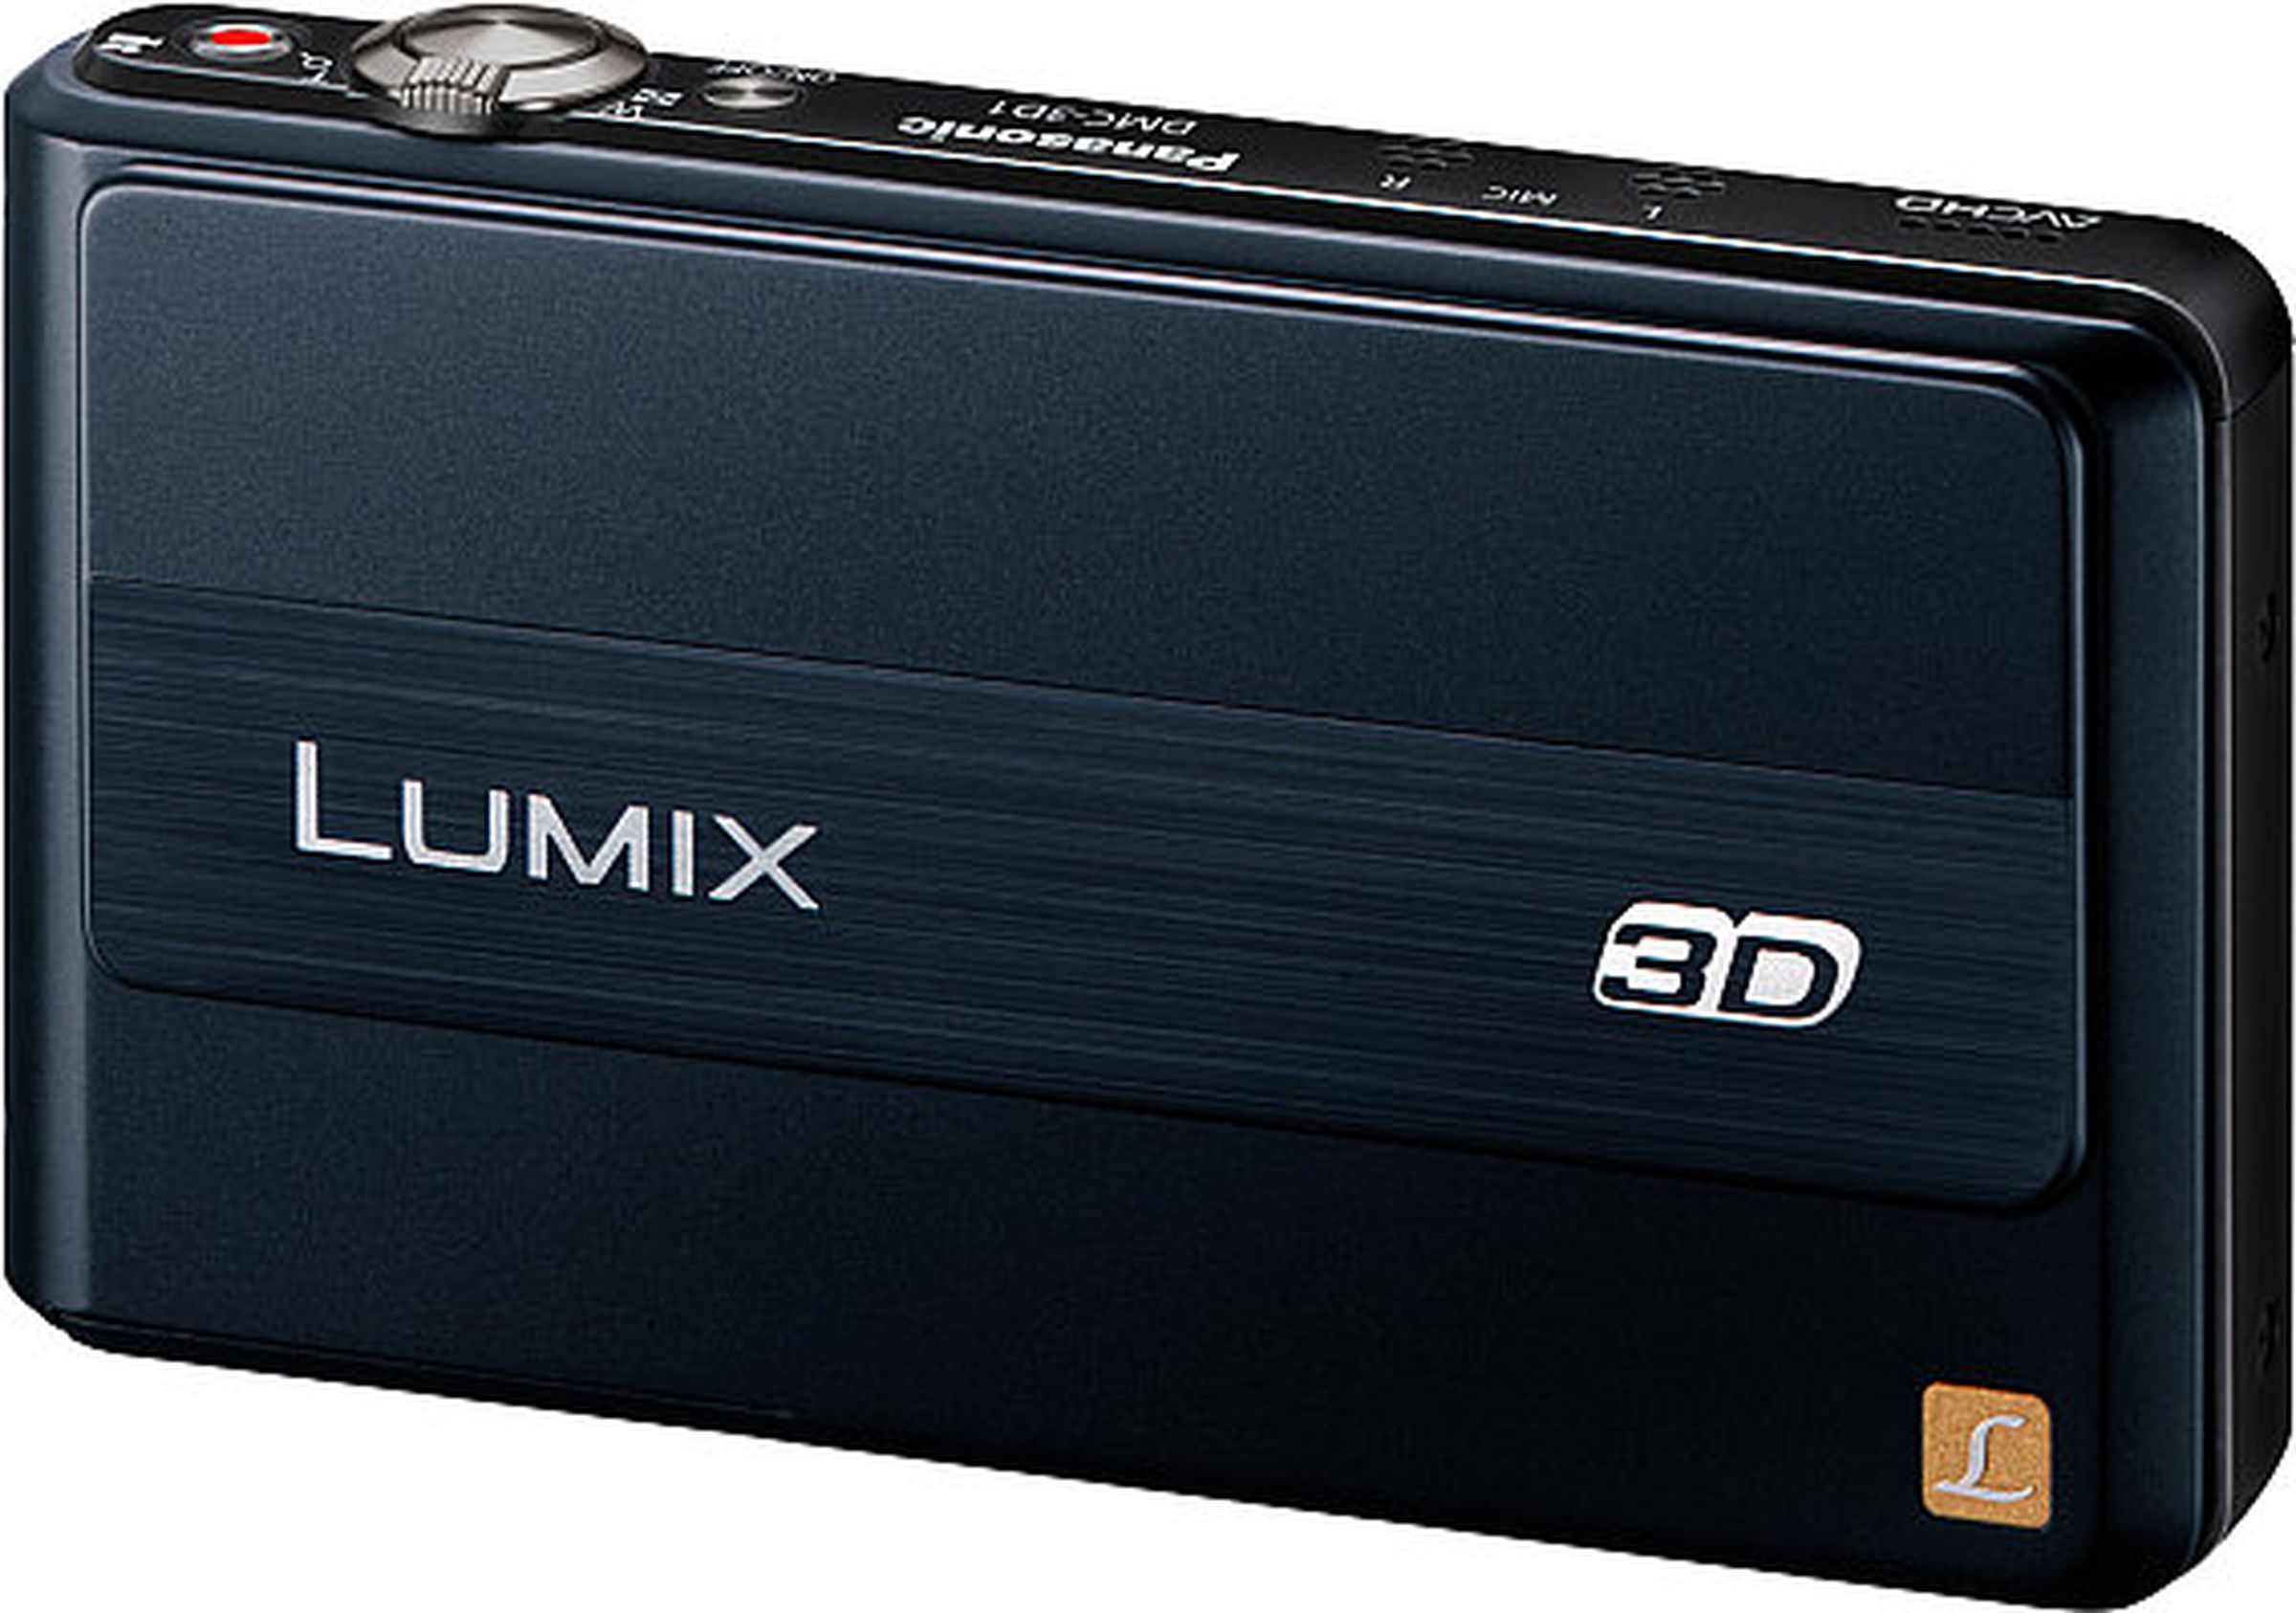 Panasonic Lumix DMC-3D1 press images